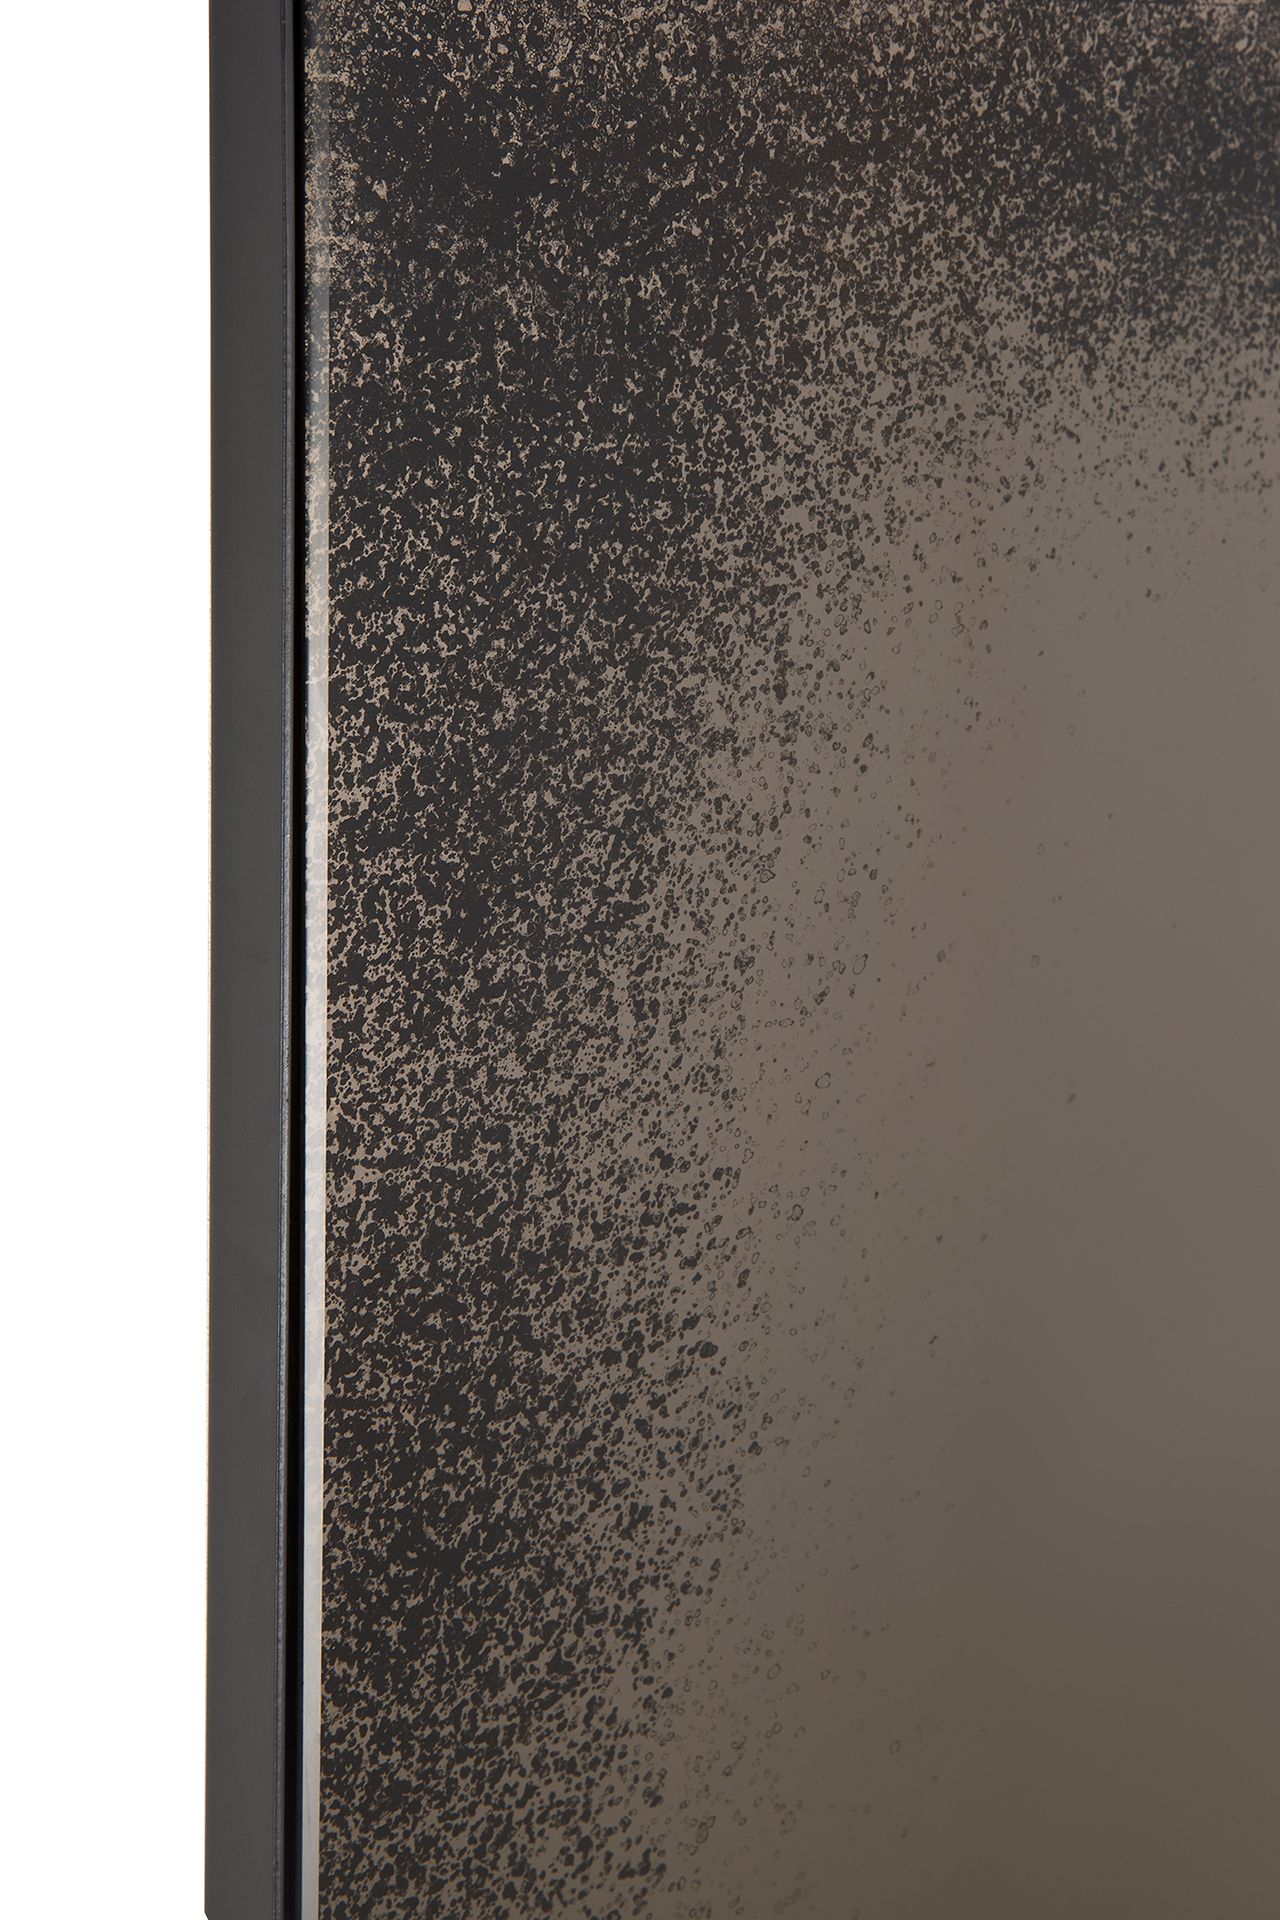 Ethnicraft - Aged Bronze vloerspiegel zwart metaal frame (71 x 3 x 244 cm)